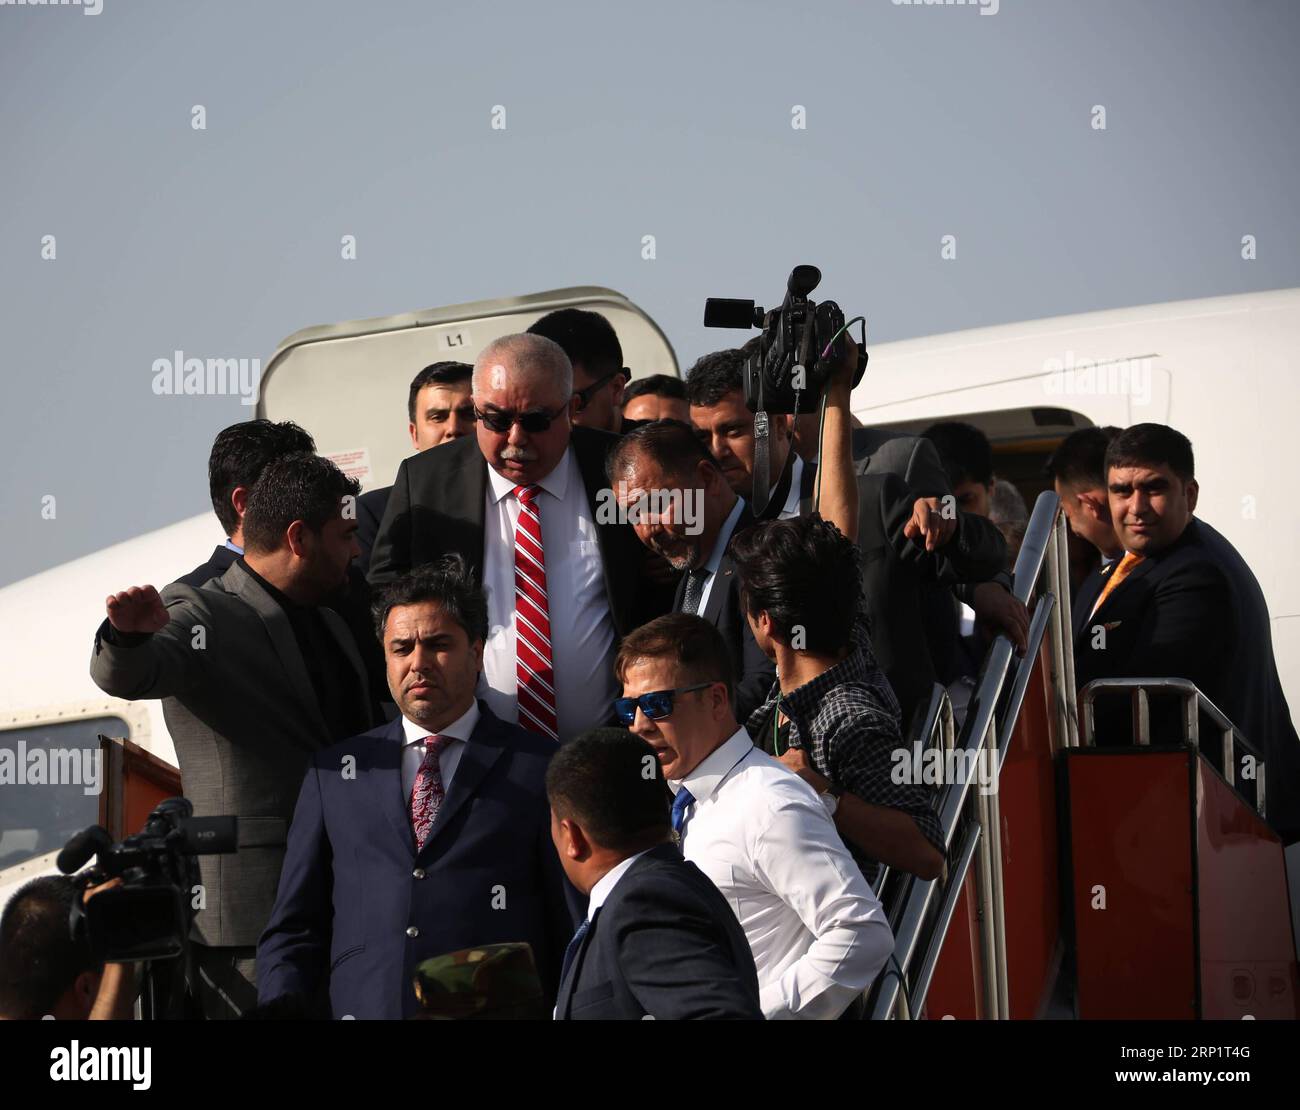 (180722) -- KABUL, 22. Juli 2018 -- afghanischer erster Vizepräsident General Abdul Rashid Dostum (C) trifft am 22. Juli 2018 auf dem internationalen Flughafen Kabul in Afghanistan ein. Der afghanische erste Vizepräsident General Abdul Rashid Dostum kehrte am Sonntag nach fast 14 Monaten Aufenthalt in der Türkei, nach medizinischer Behandlung und Genesung, nach Hause zurück. Rahmat Alizadah) (zcc) AFGHANISTAN-KABUL-VIZEPRÄSIDENT-RÜCKKEHR NACH HAUSE XinhuaxKabul PUBLICATIONxNOTxINxCHN Stockfoto